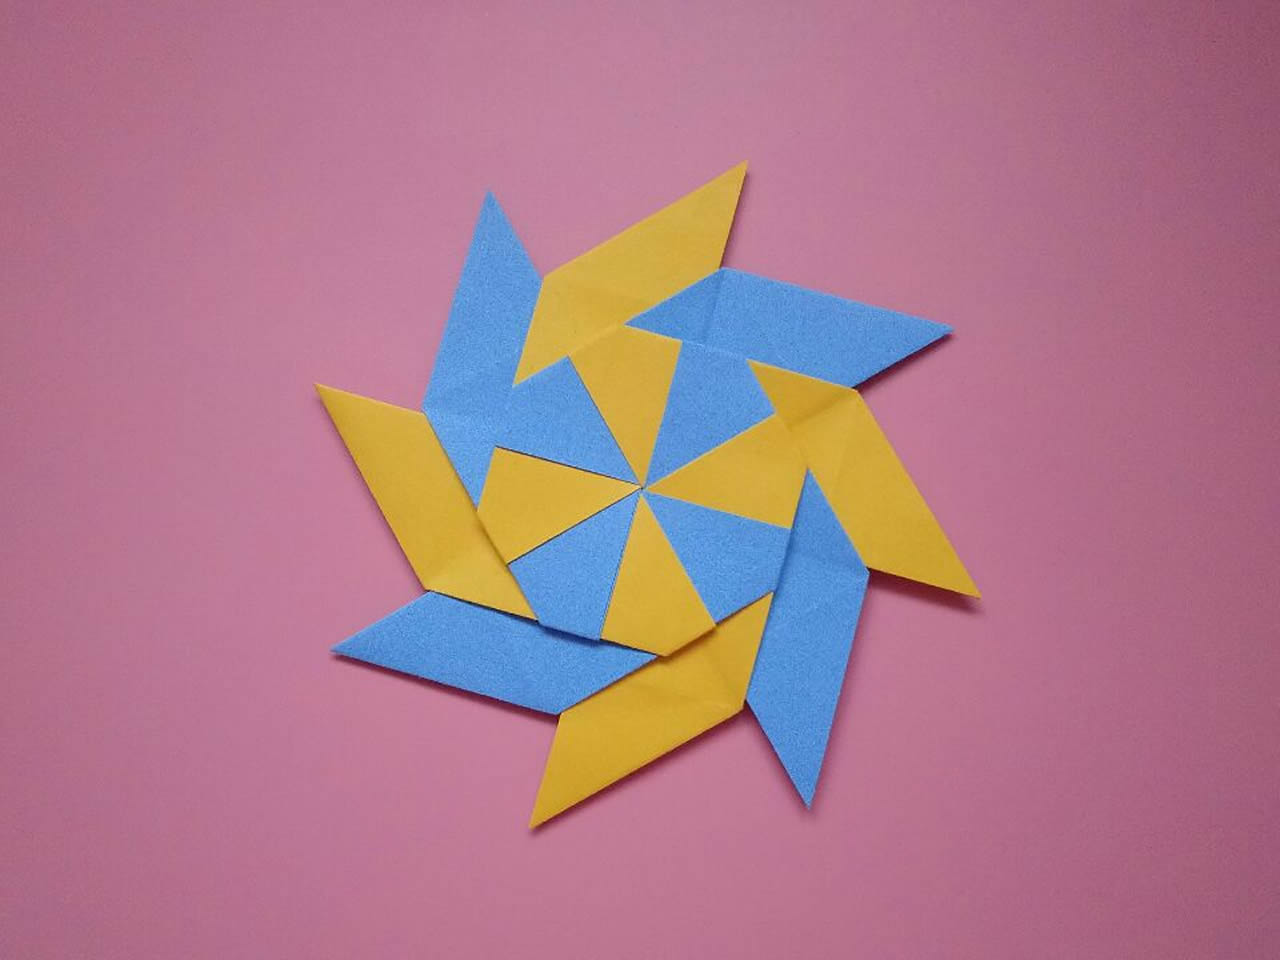 一款可以变形的飞镖折纸,简单几步就做好,儿童益智手工折纸教程